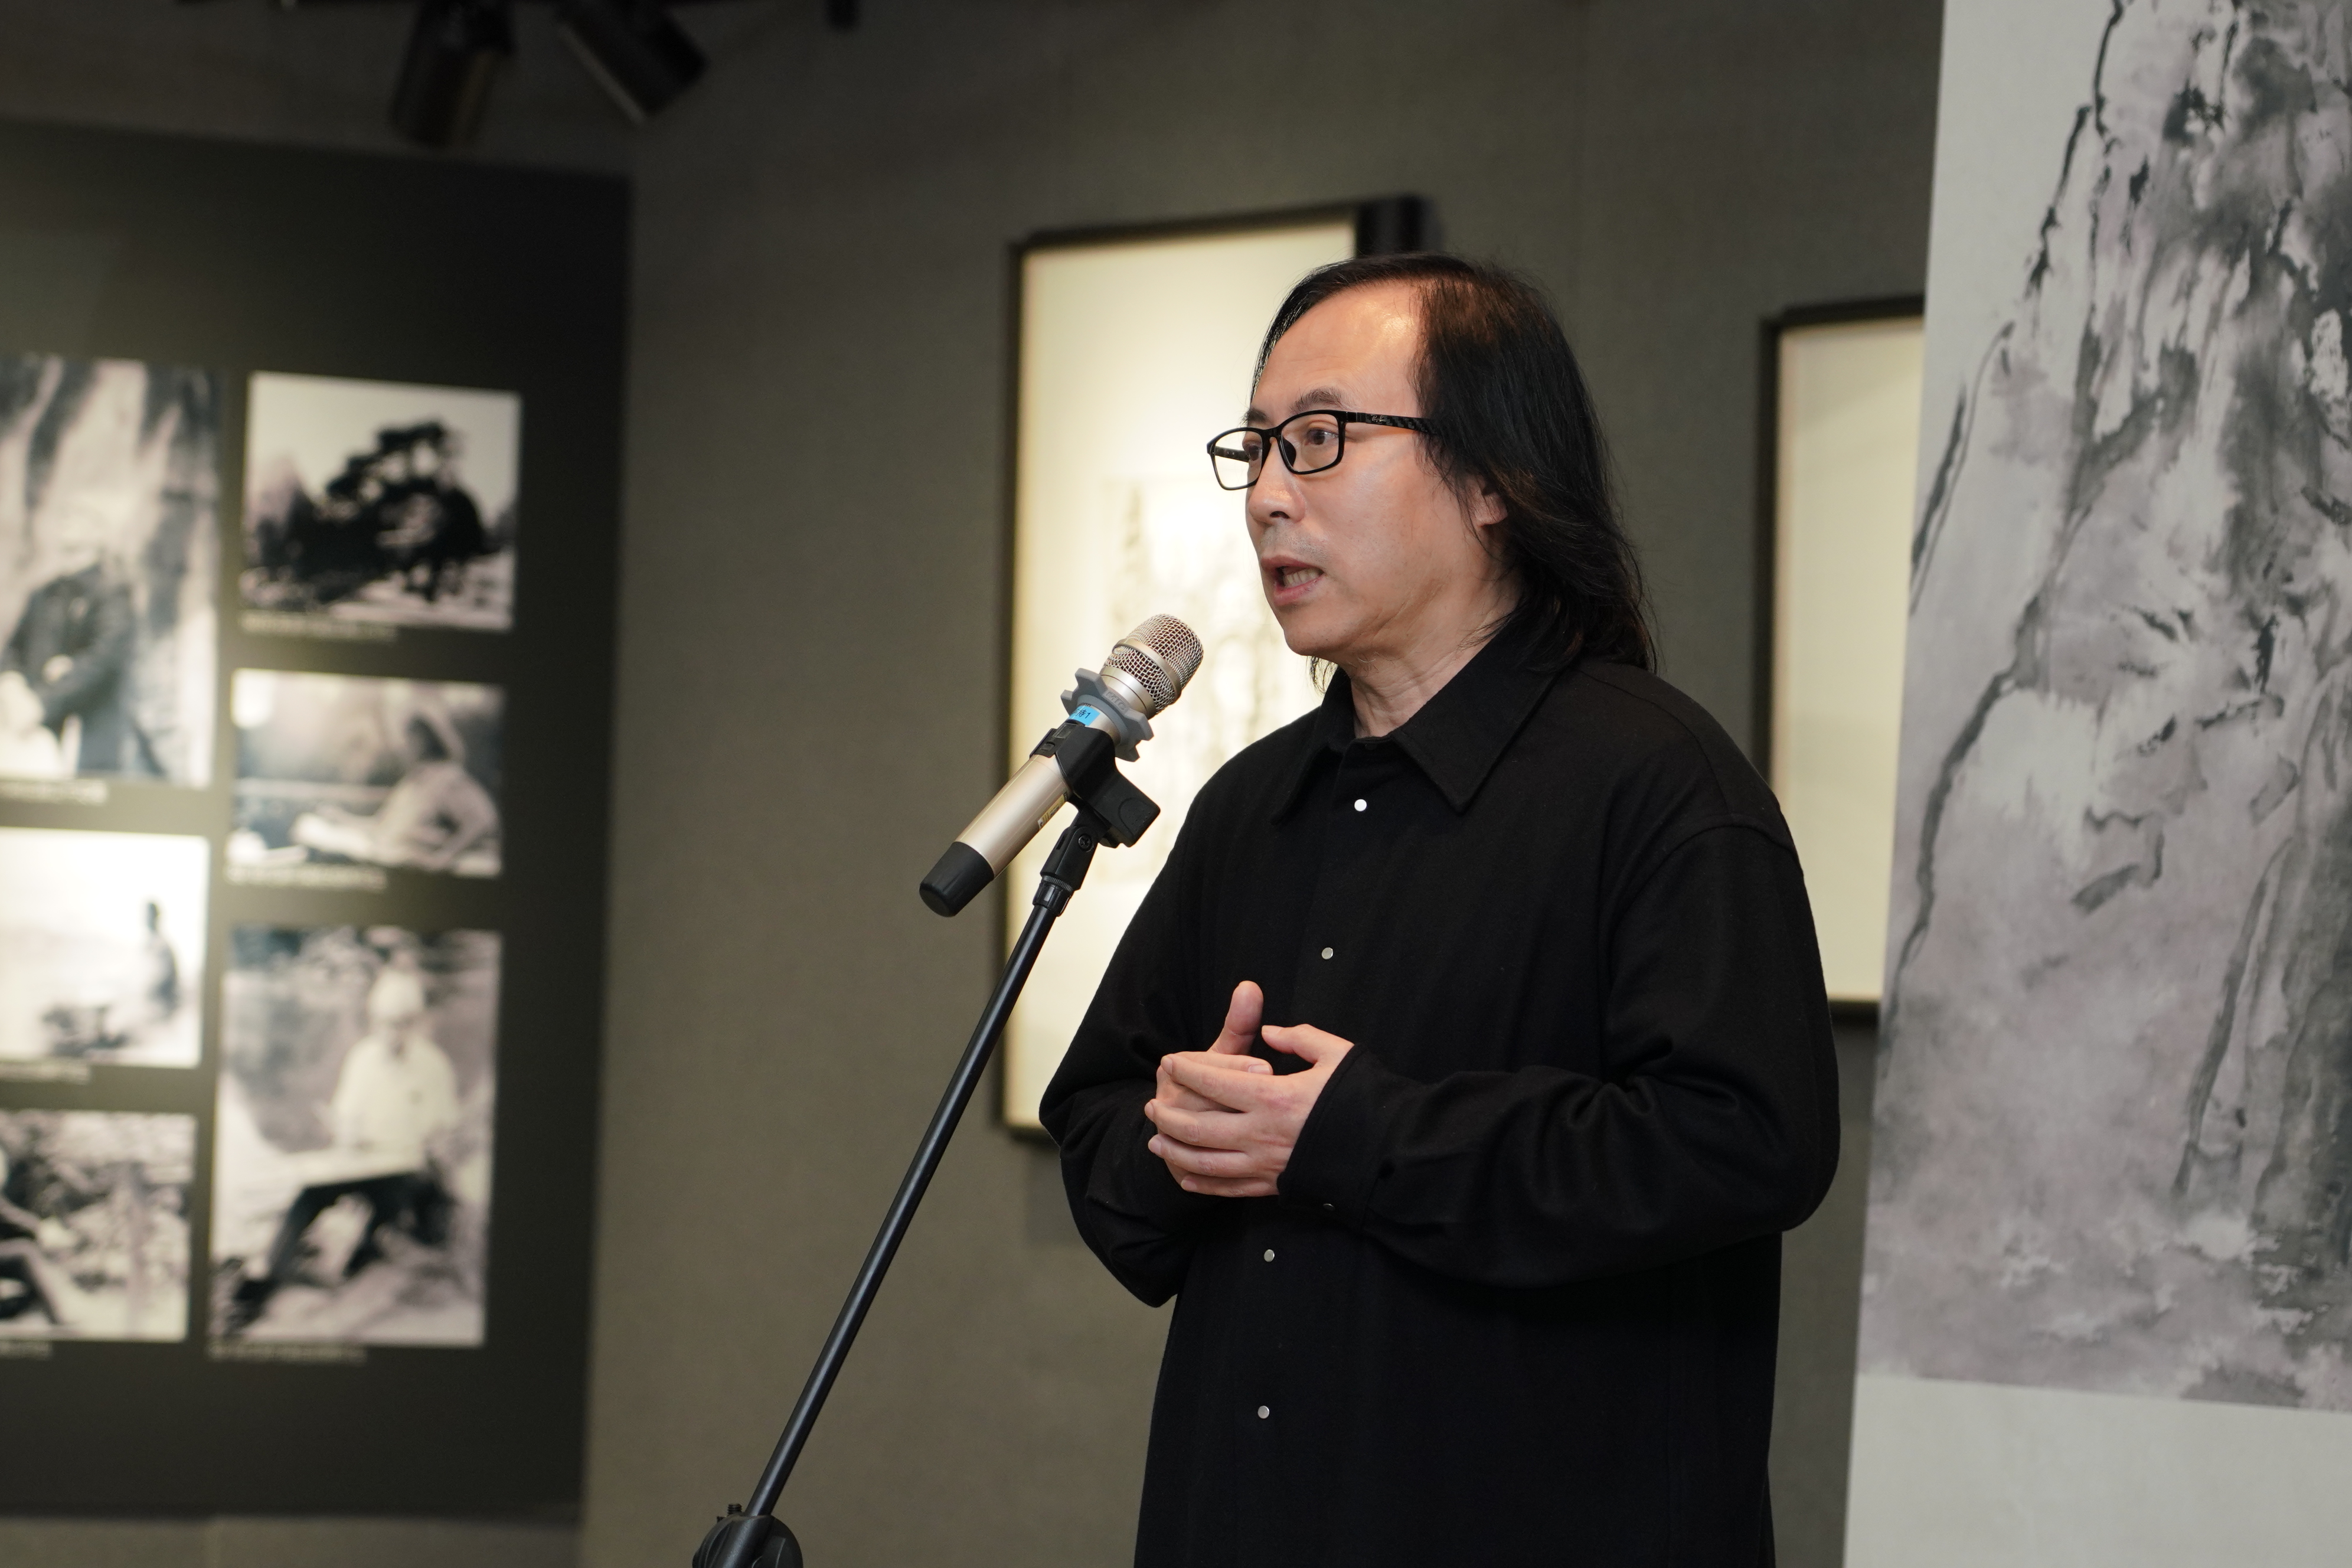 李家山水三代艺术家对景创作展在北京荣宝斋隆重开幕